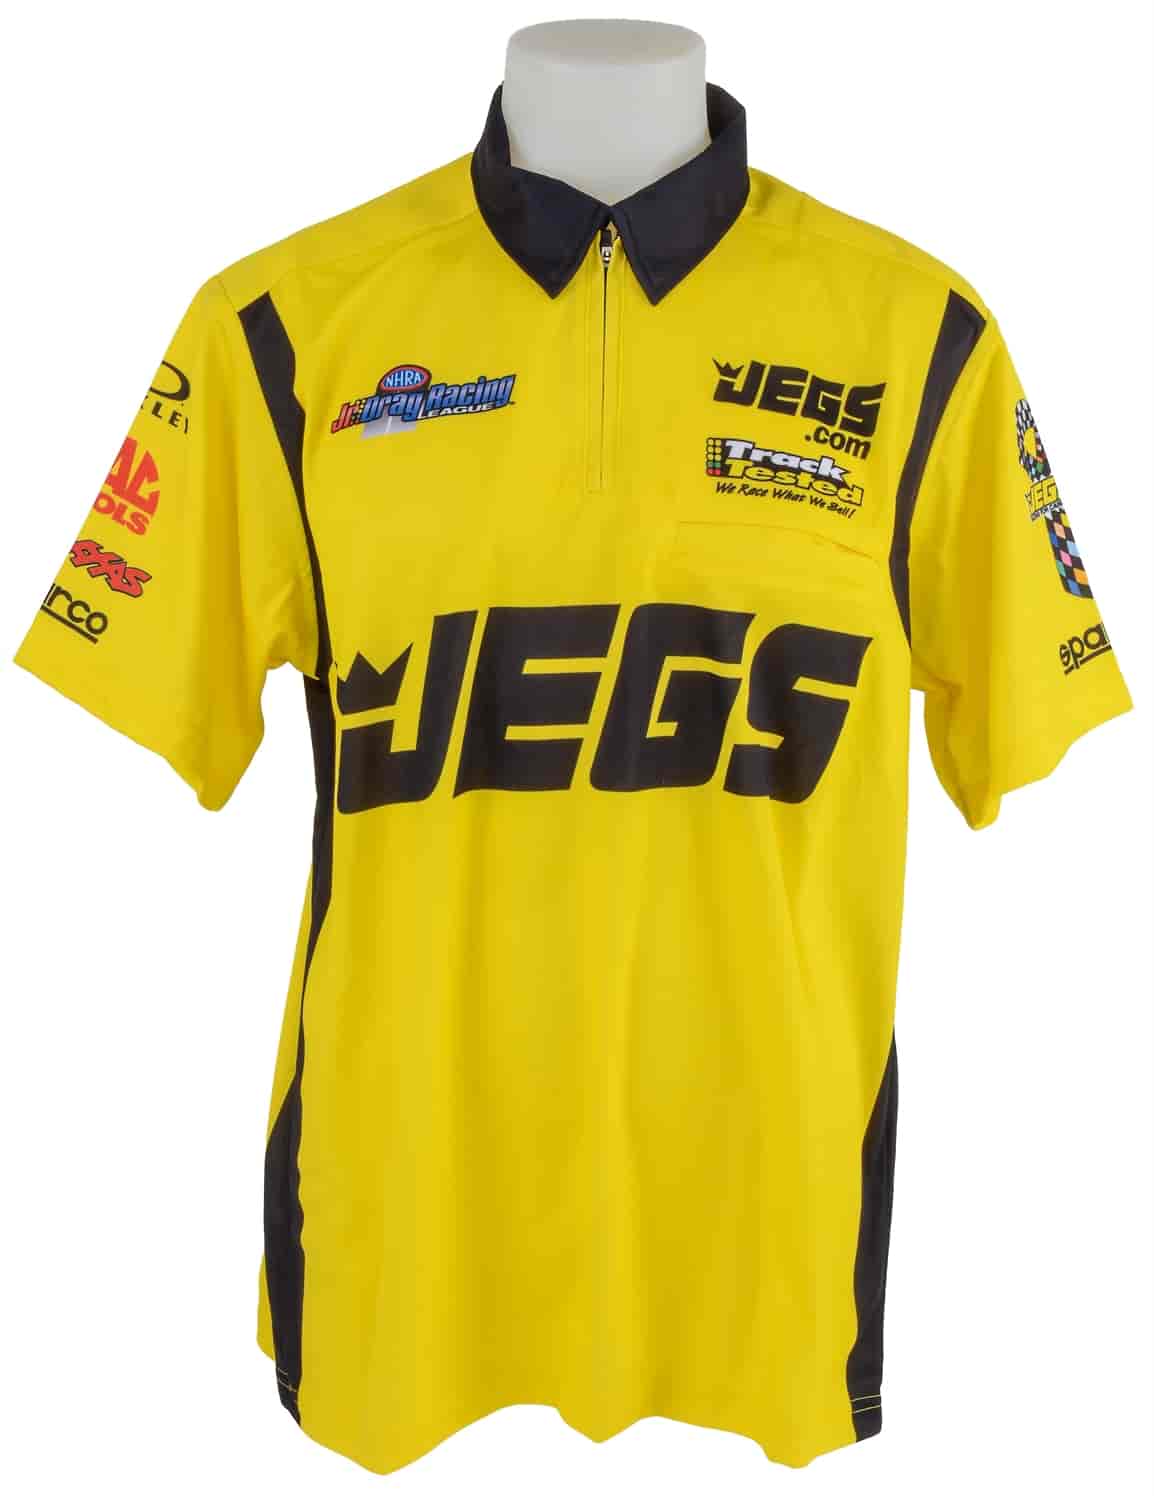 Women's Jr Dragster Race Team Crew Shirt Yellow Medium